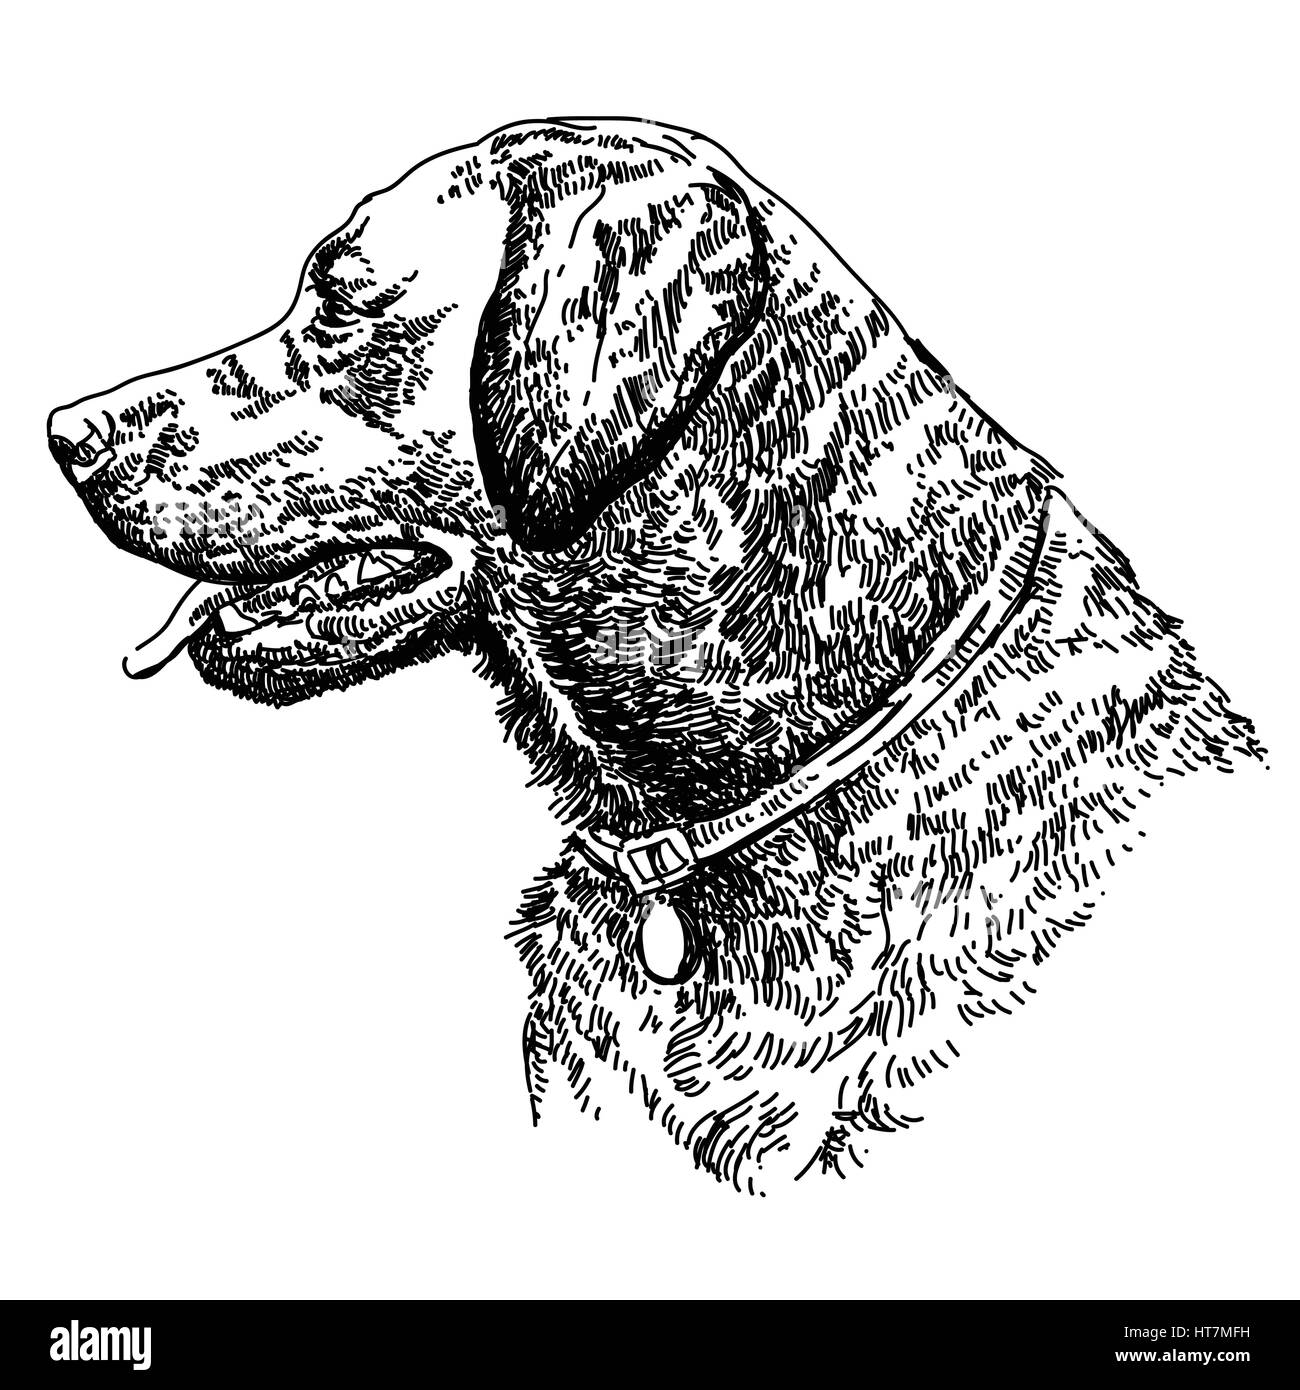 Labrador retriever cabeza dibujo a mano ilustración vectorial Ilustración del Vector